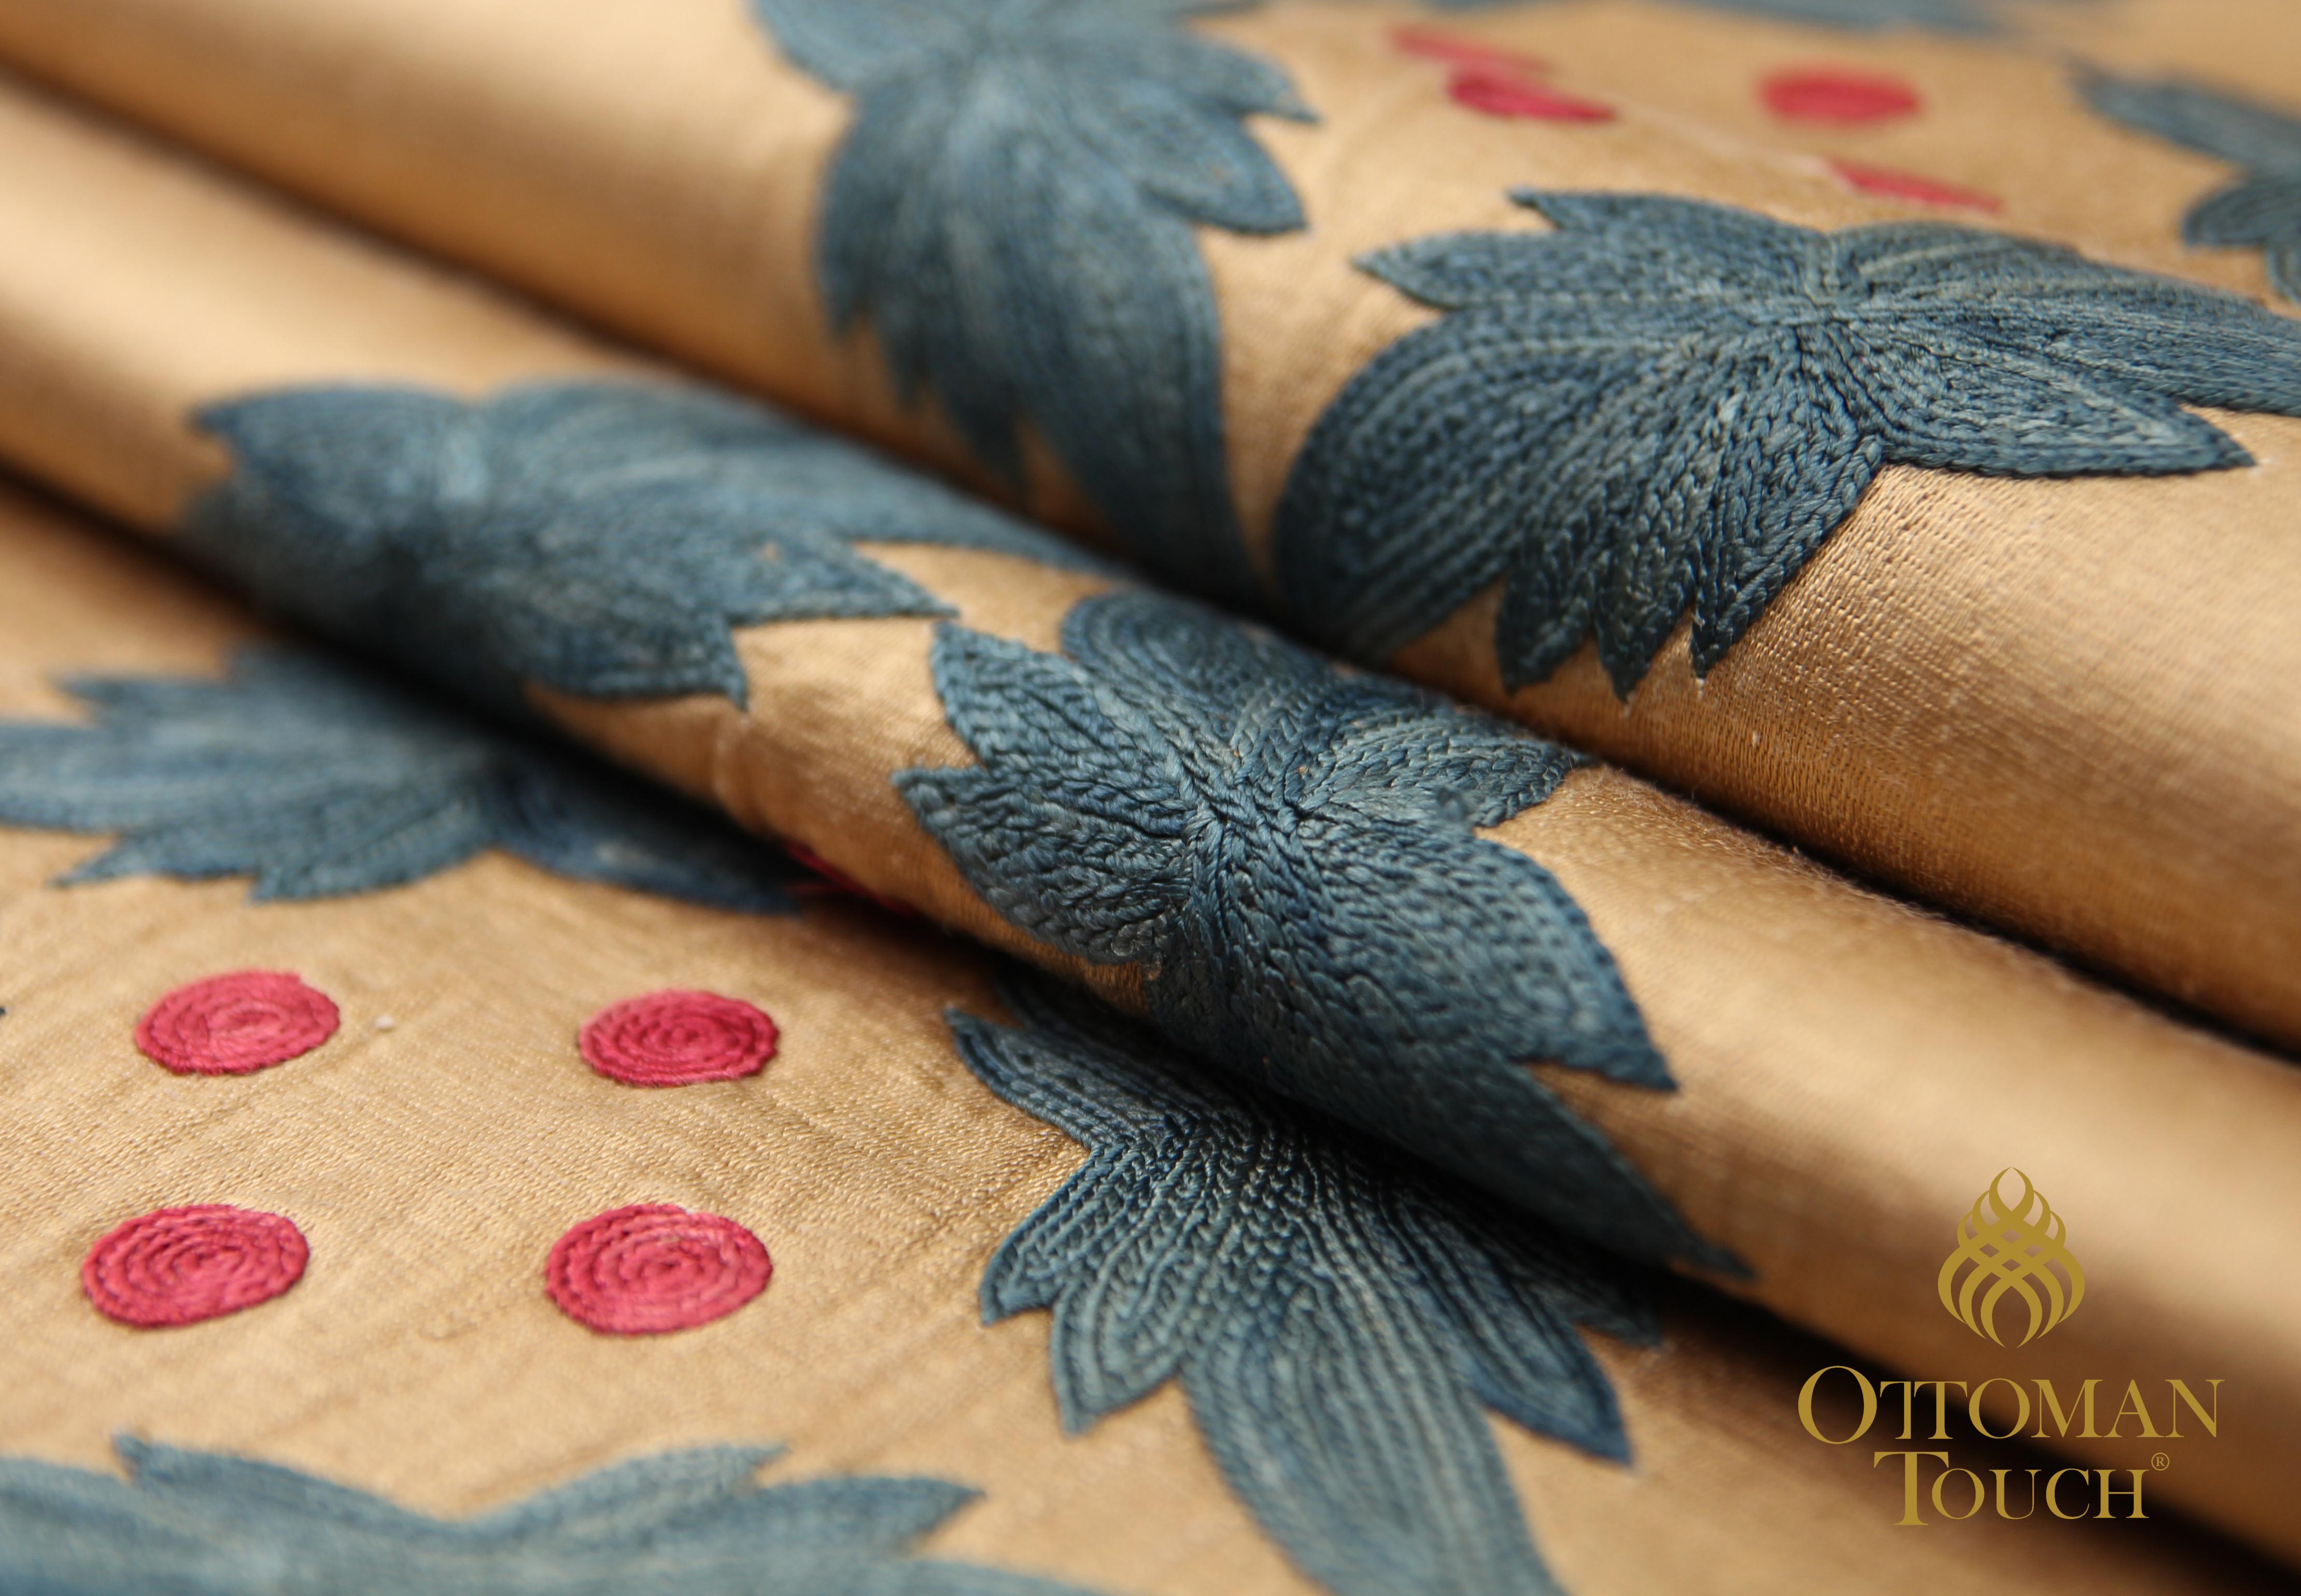 Les tapisseries Suzani sont un type de textile brodé originaire d'Asie centrale, très populaire dans l'Empire ottoman. Ces textiles décoratifs étaient fabriqués à la main par des artisans qualifiés et servaient souvent à décorer les maisons des